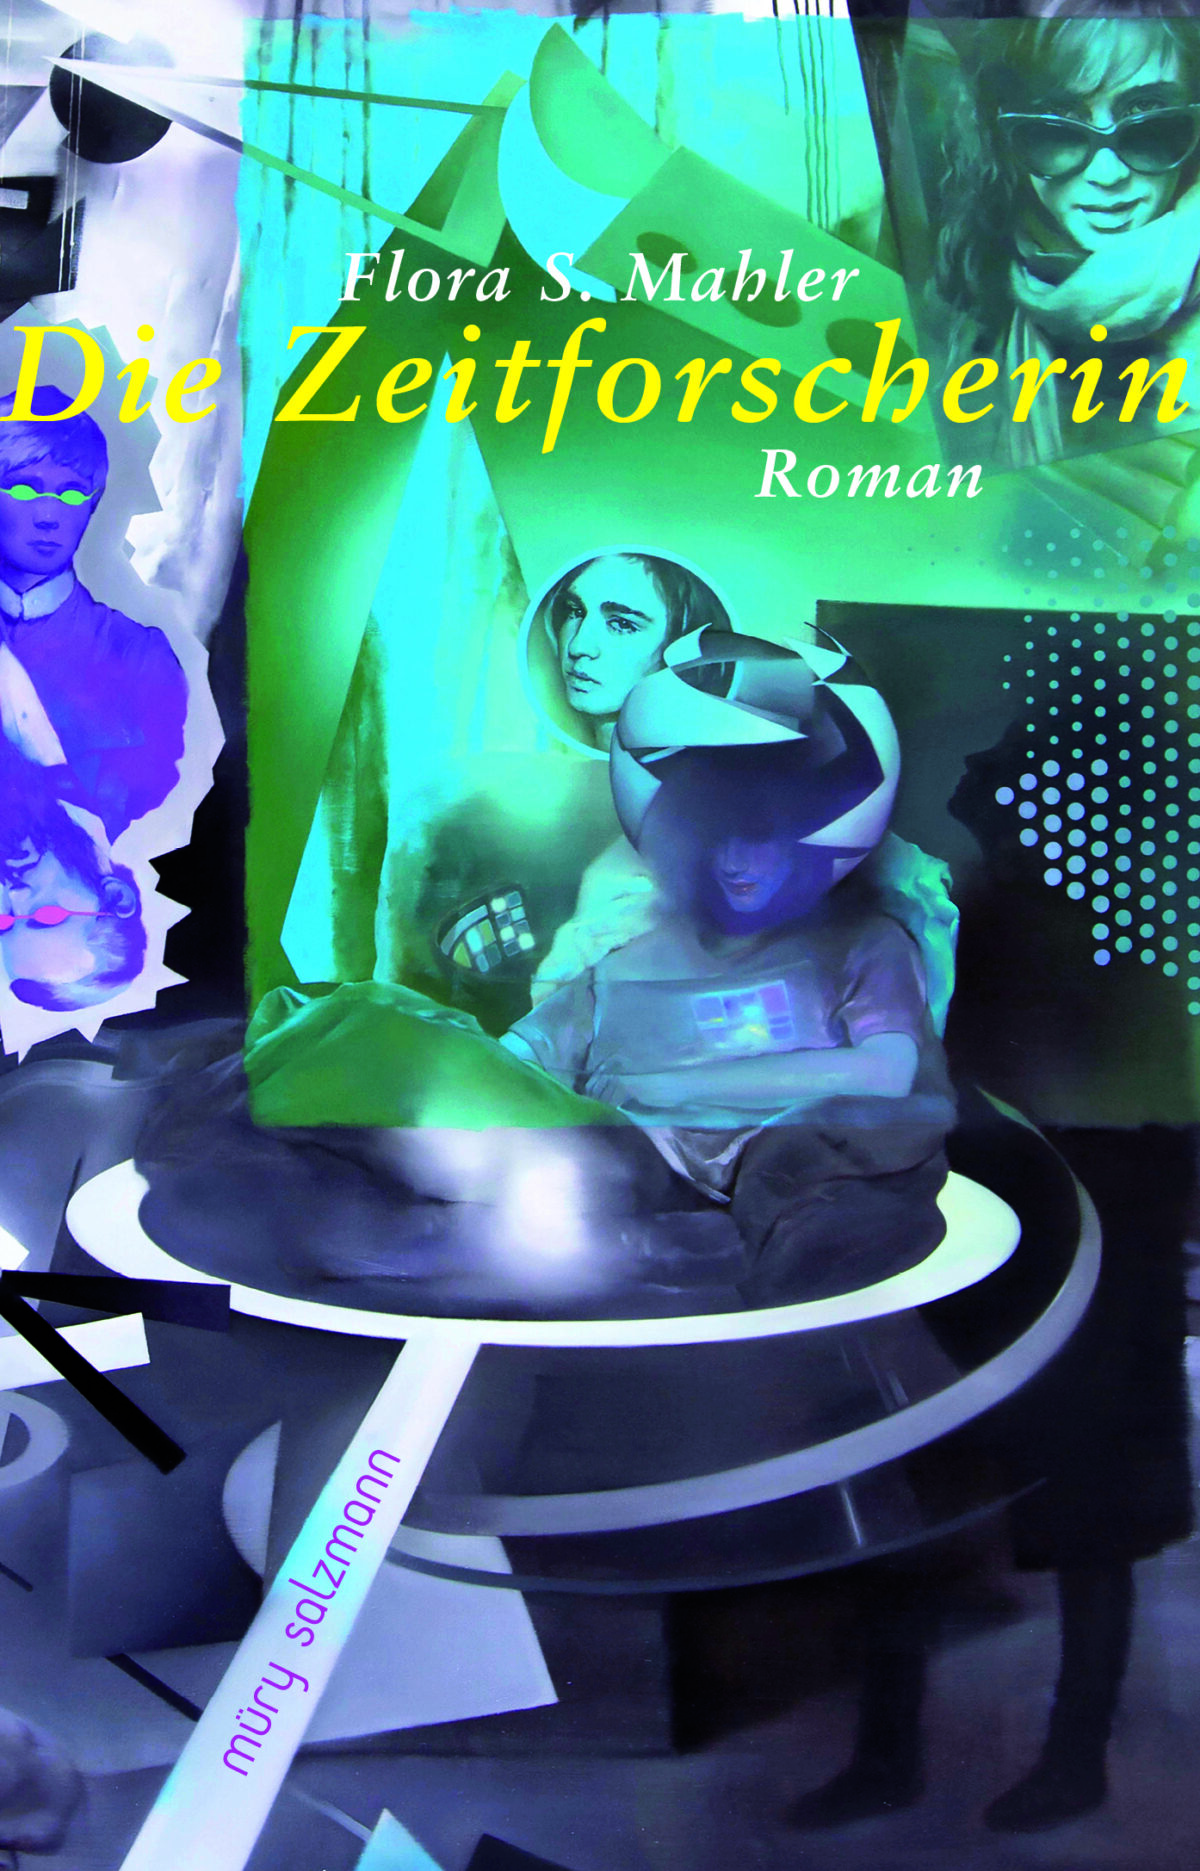 Cover Flora S. Mahler Die Zeitforscherin unter Verwendung des Bildes Sympathy for Telepathy von Asgar/Gabriel, 2015, Öl auf Leinwand